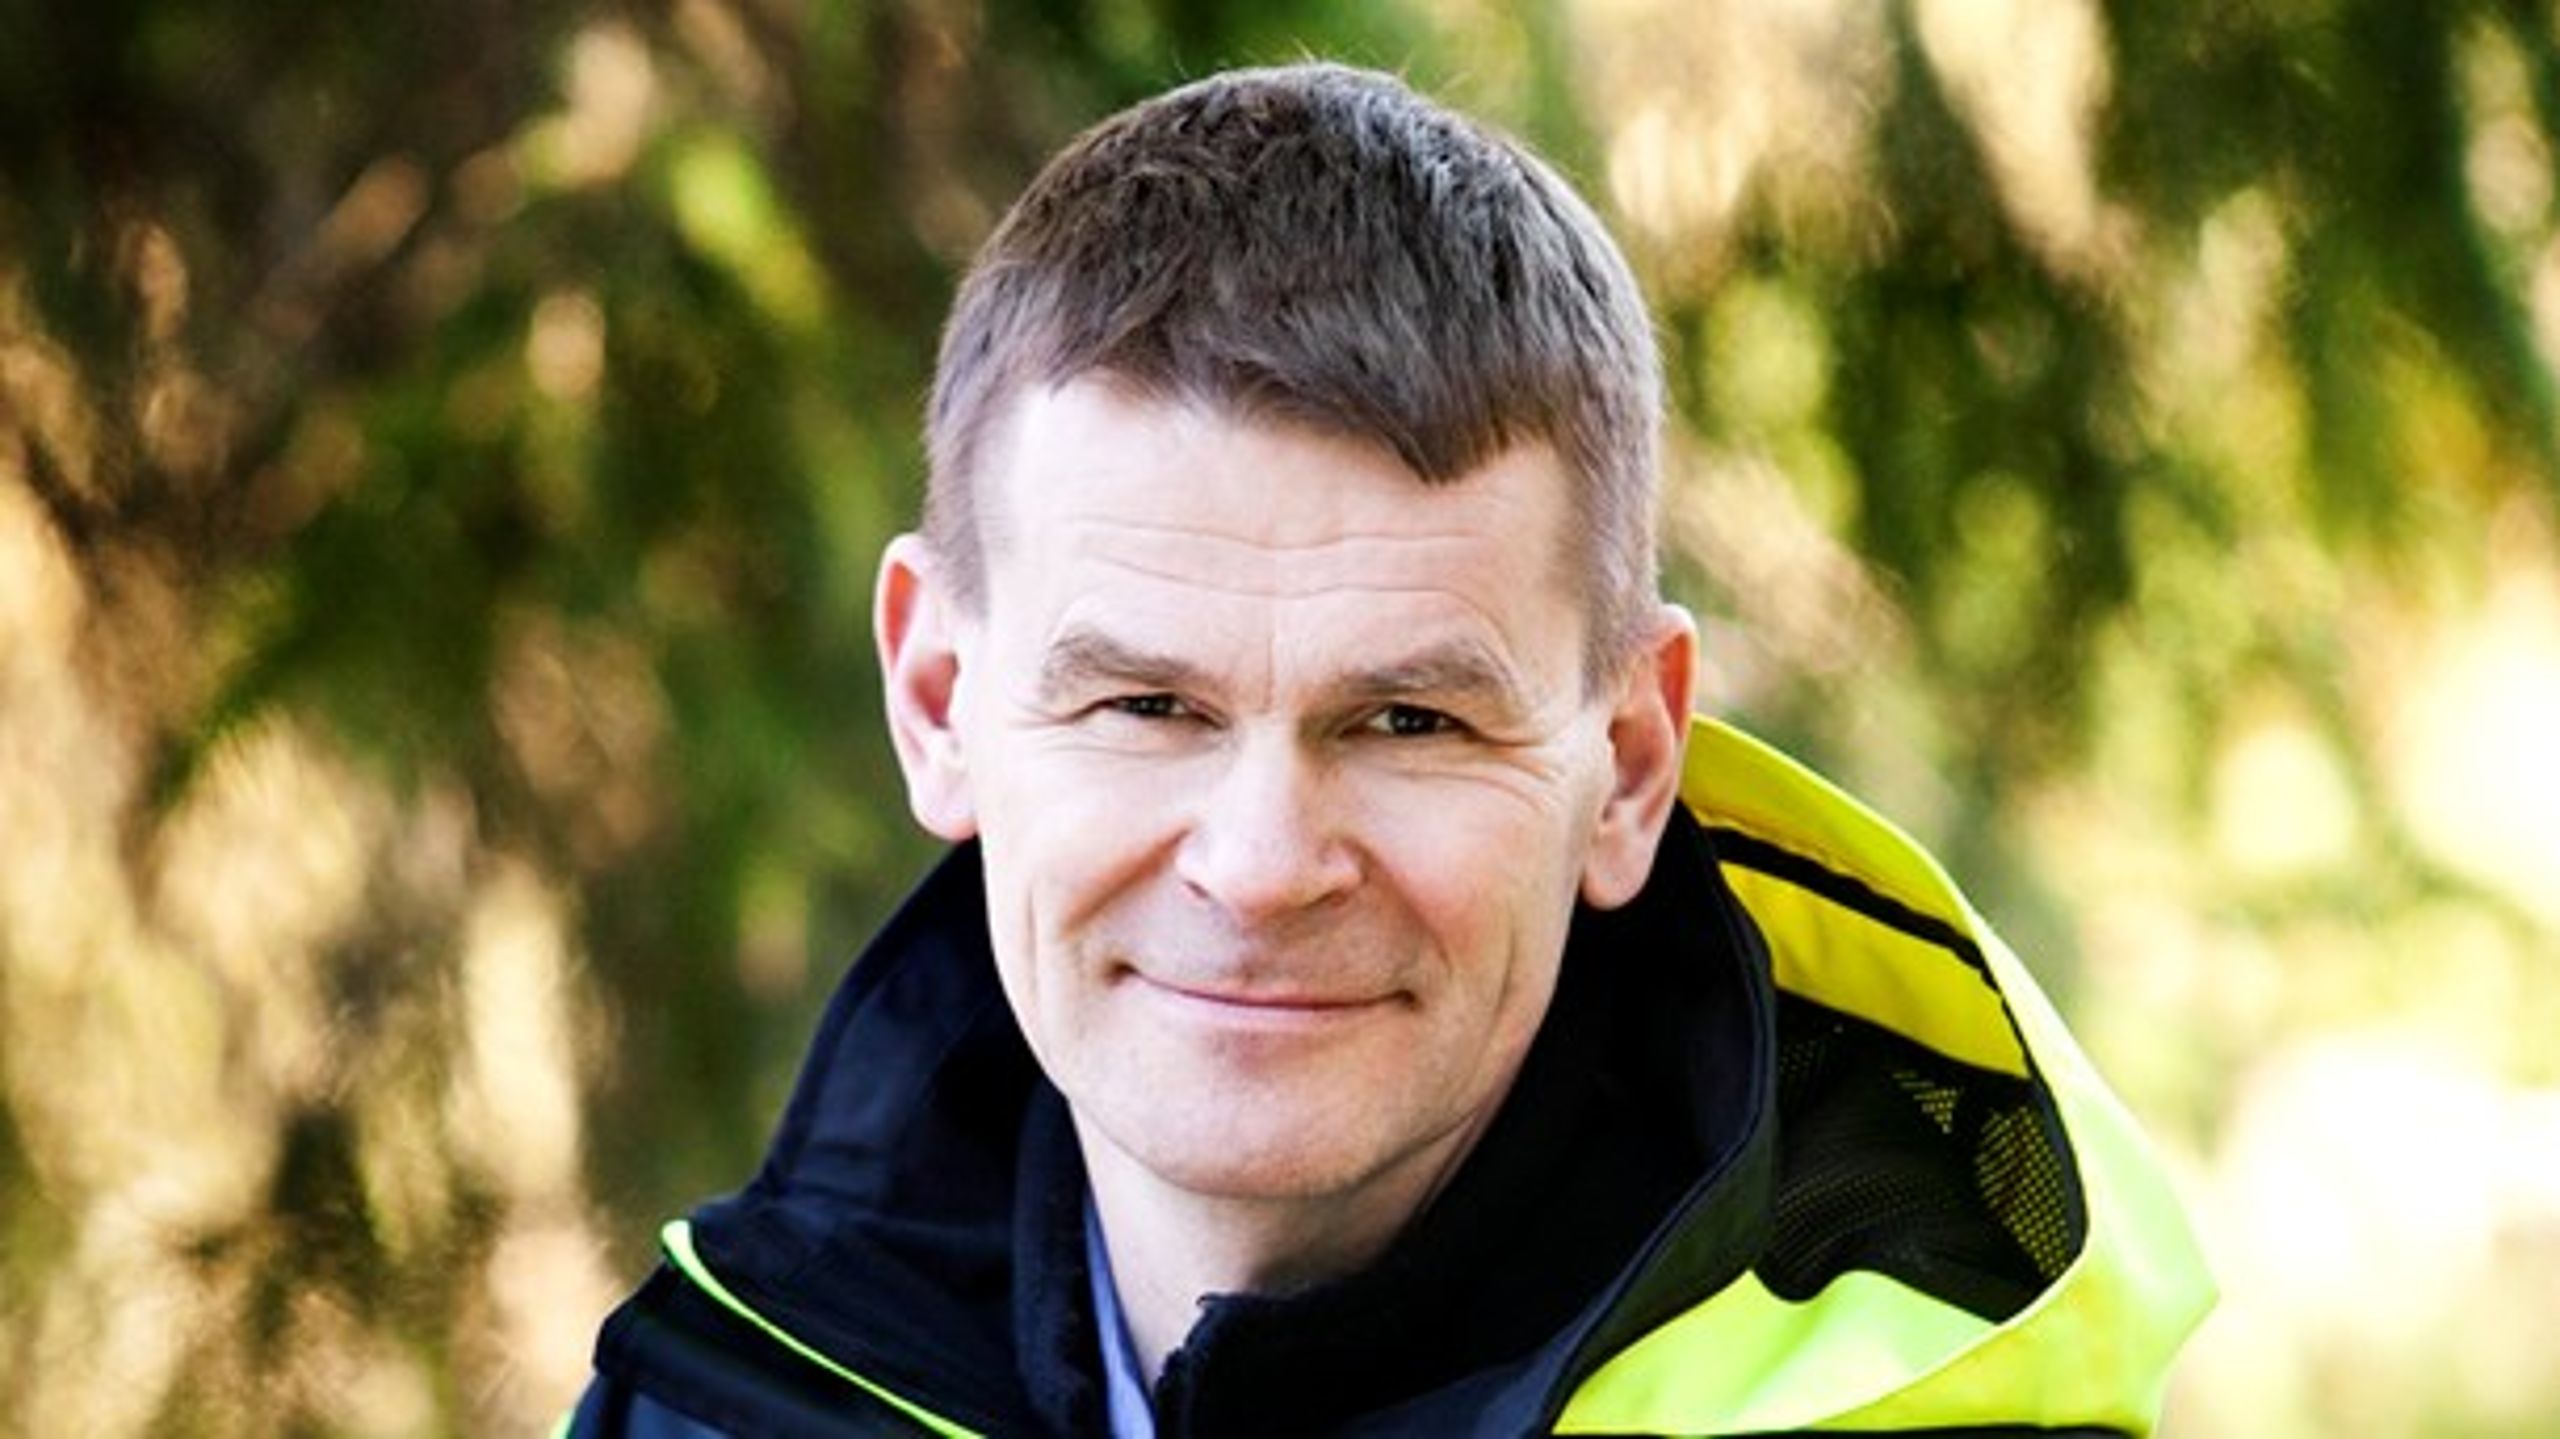 Skogsstyrelsens generaldirektör Herman Sundqvist svarar på BirdLife Sveriges kritik.